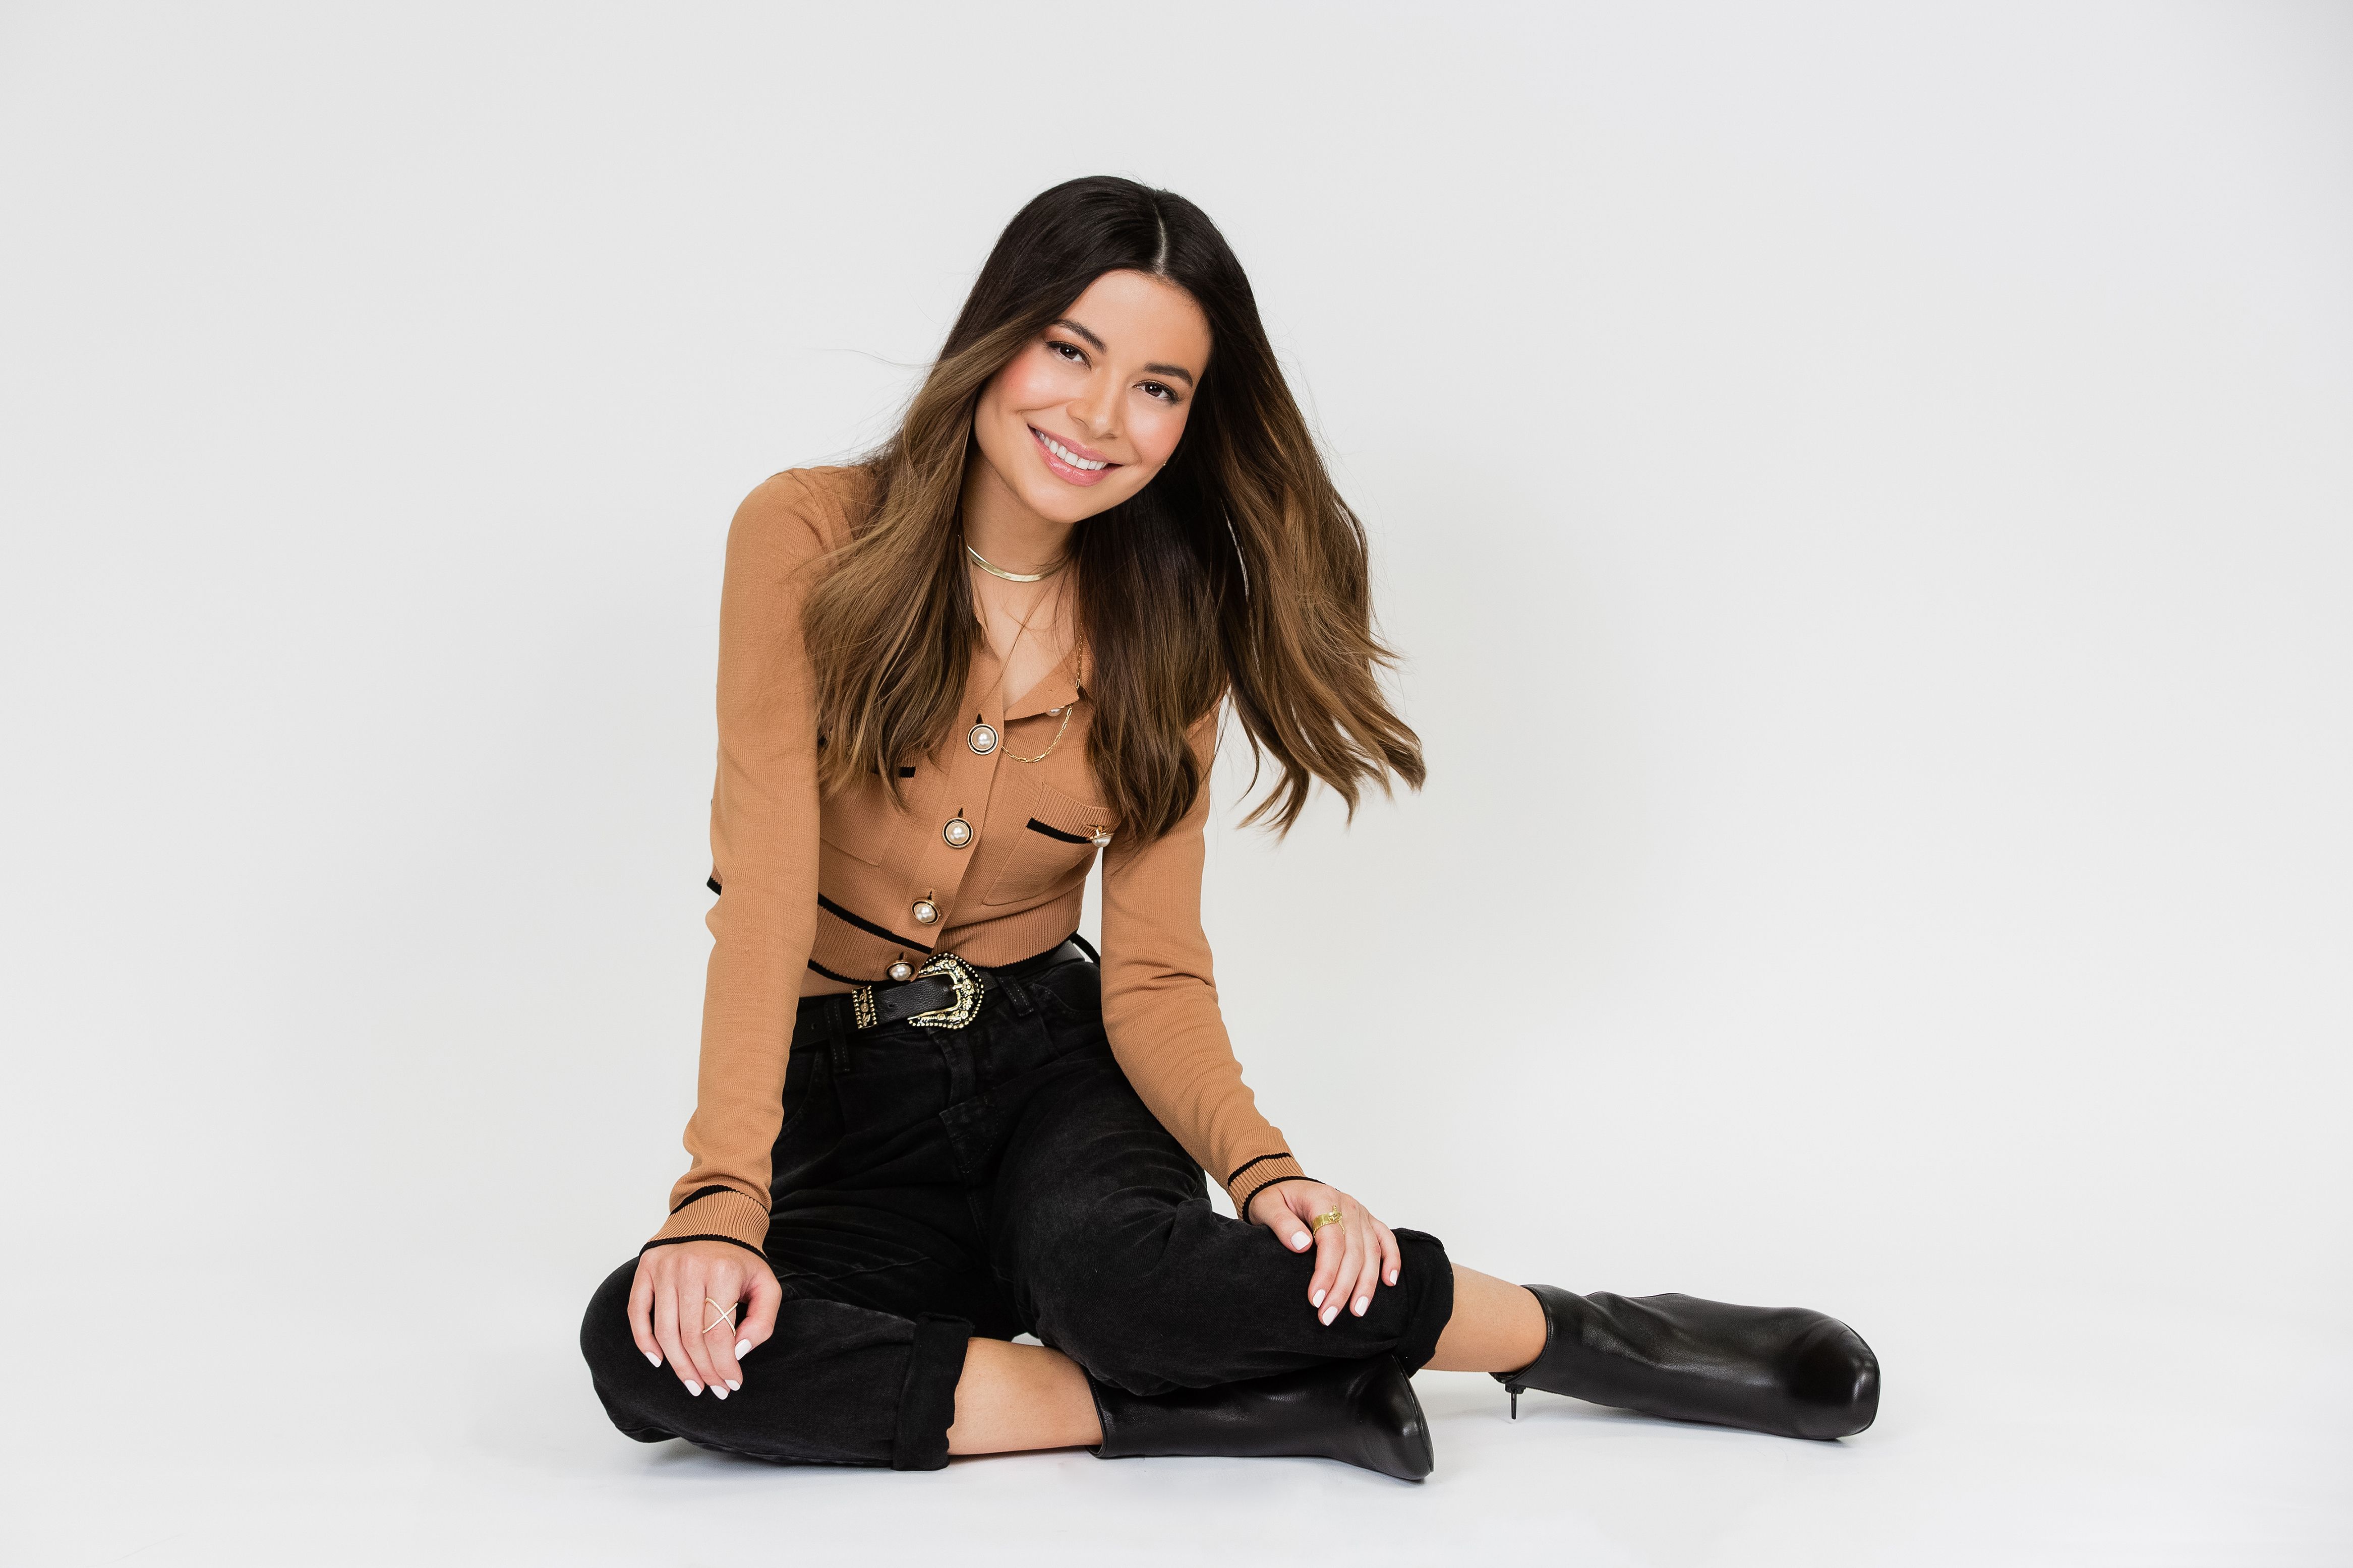  Miranda Cosgrove en "Misión Imparable" Temporada 2 y el impacto del show en la próxima generación